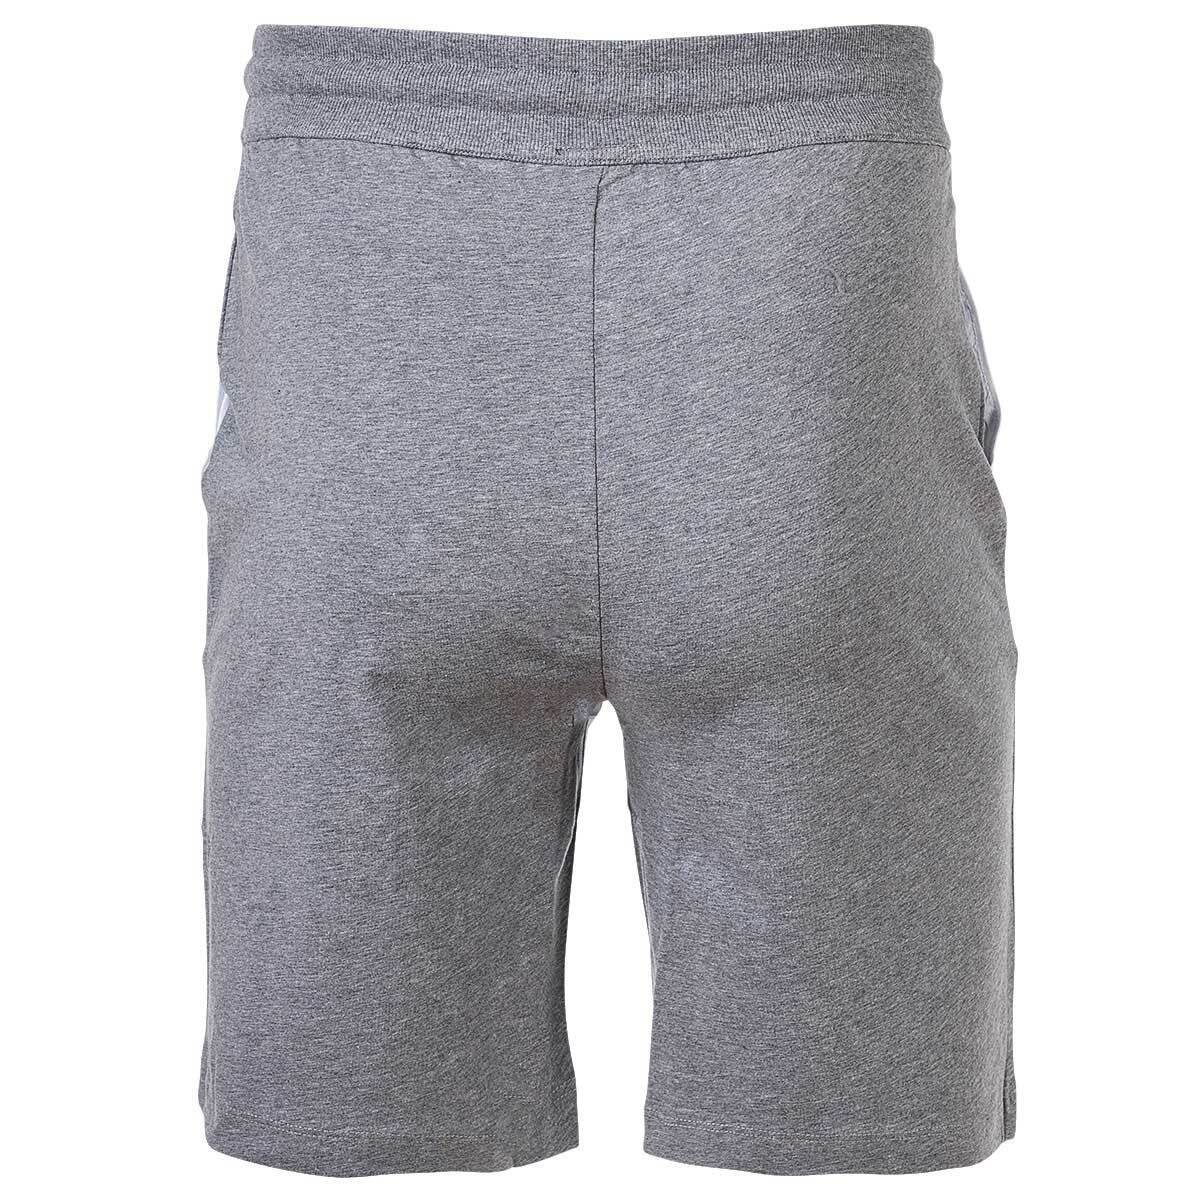 Herren Loungewear, Jersey-Shorts Joop! - Sweatshorts Grau Jogginghose